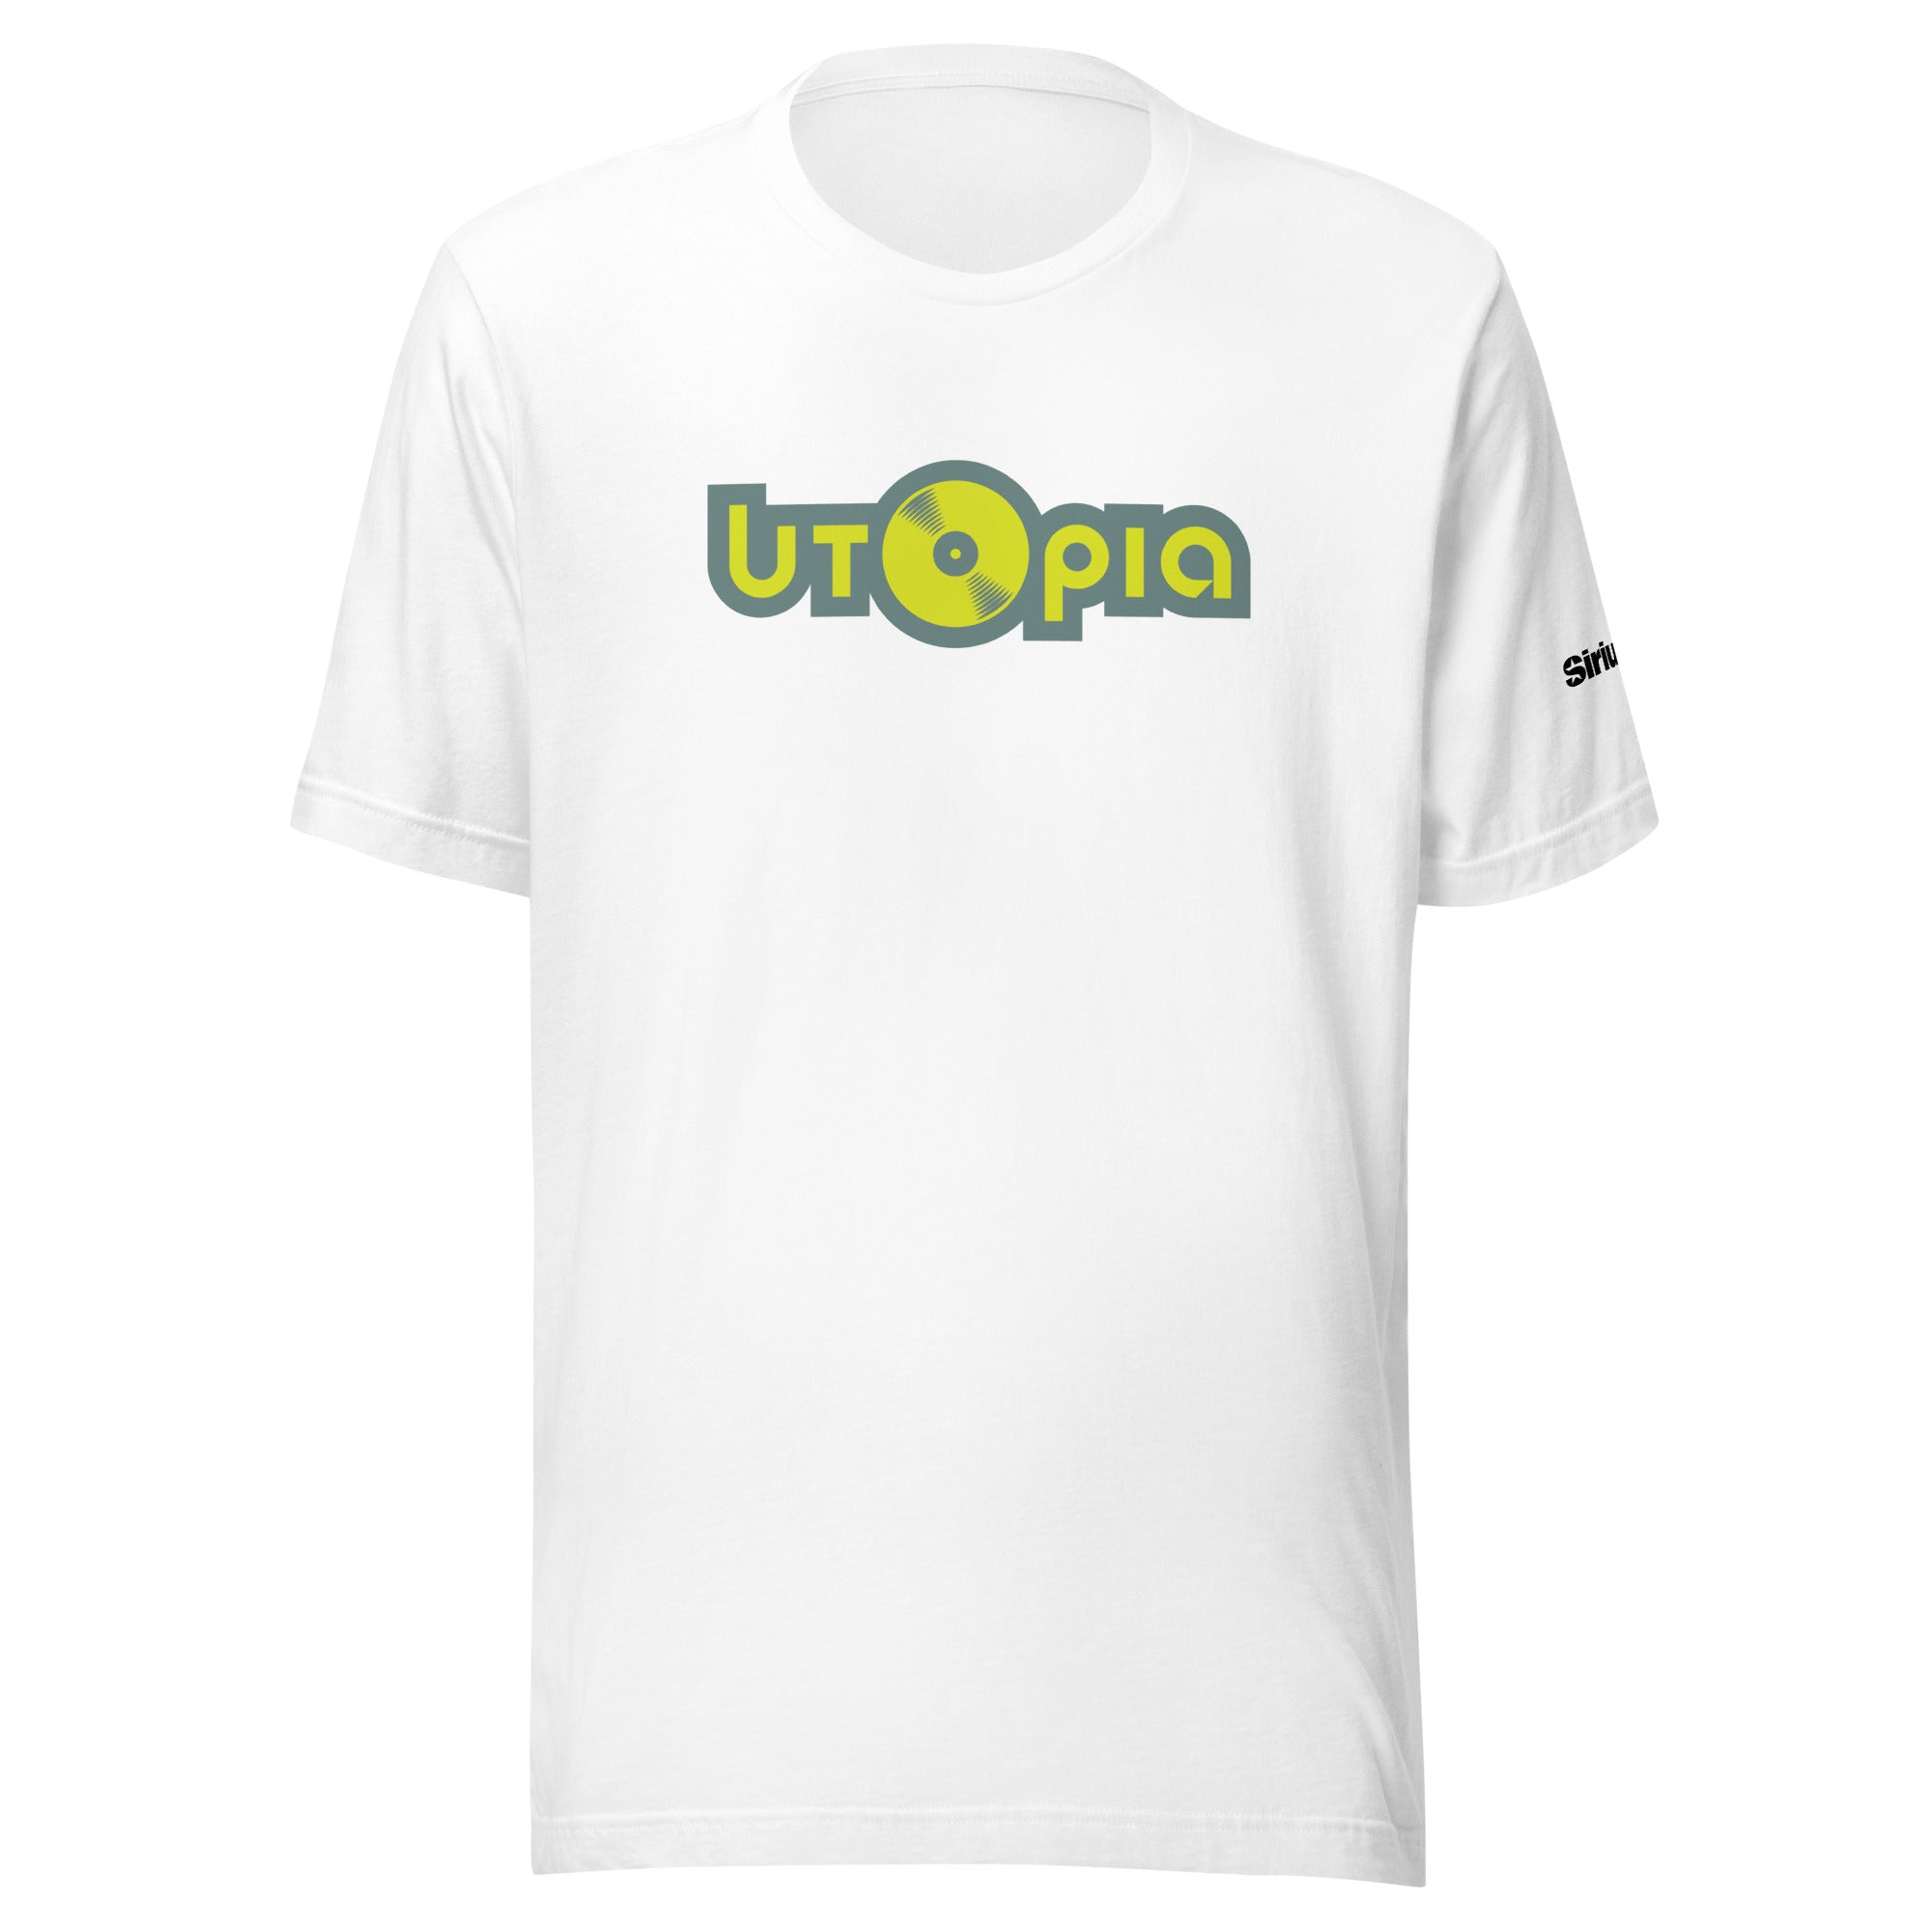 Utopia: T-shirt (White)